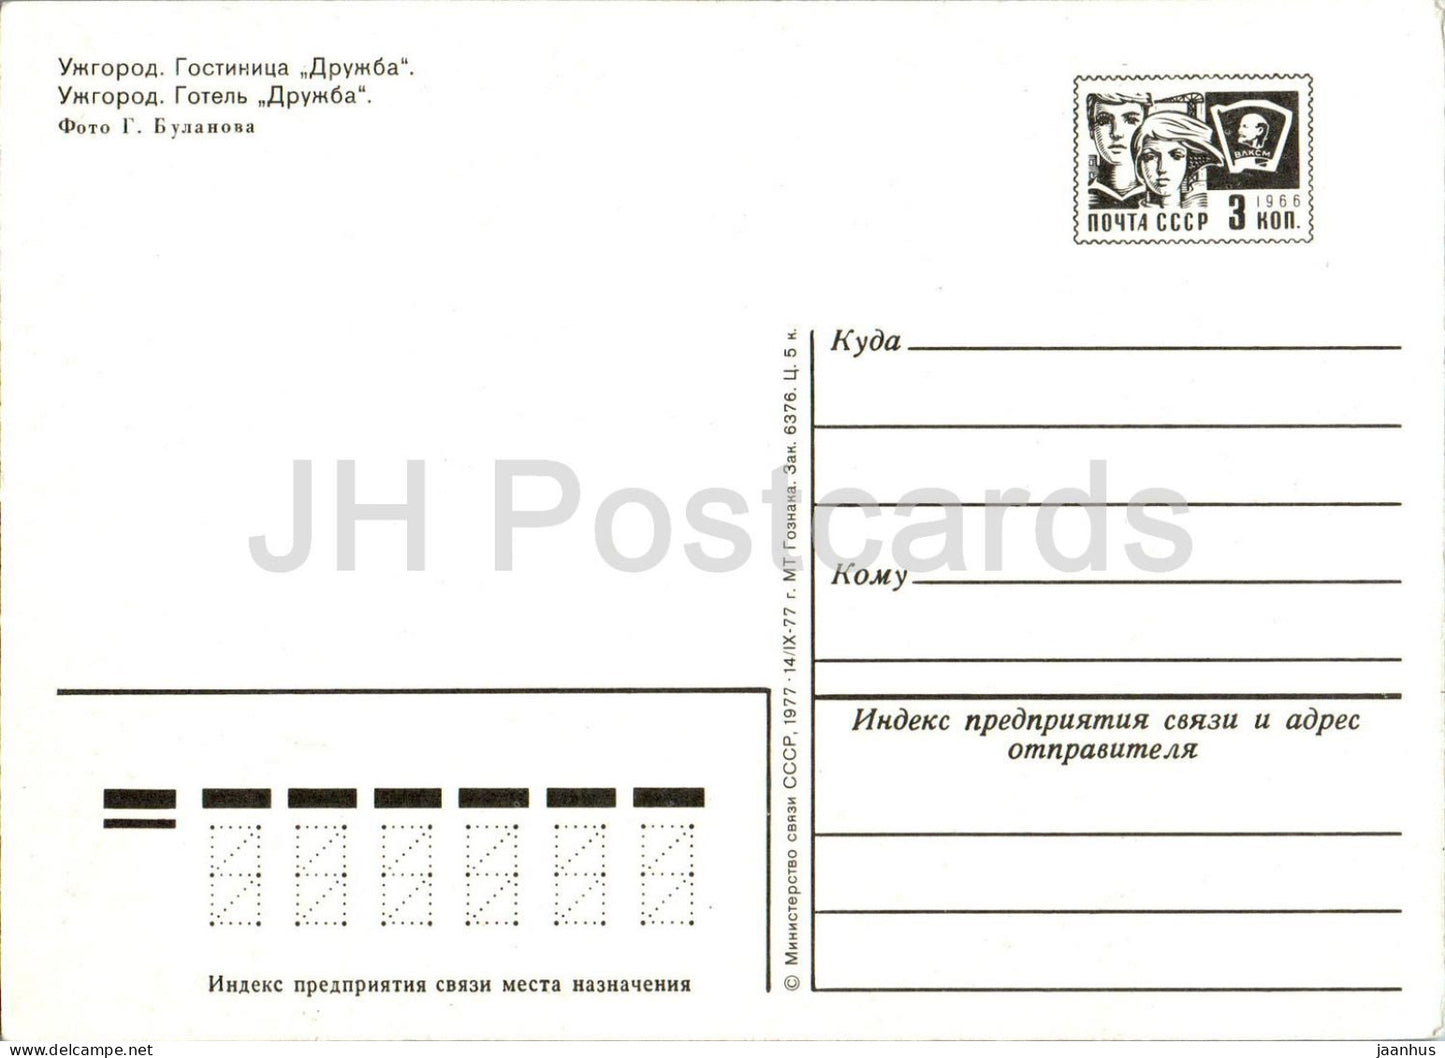 Uzhhorod - hotel Druzhba (Friendship) - car Zhiguli - postal stationery - 1977 - Ukraine USSR - unused